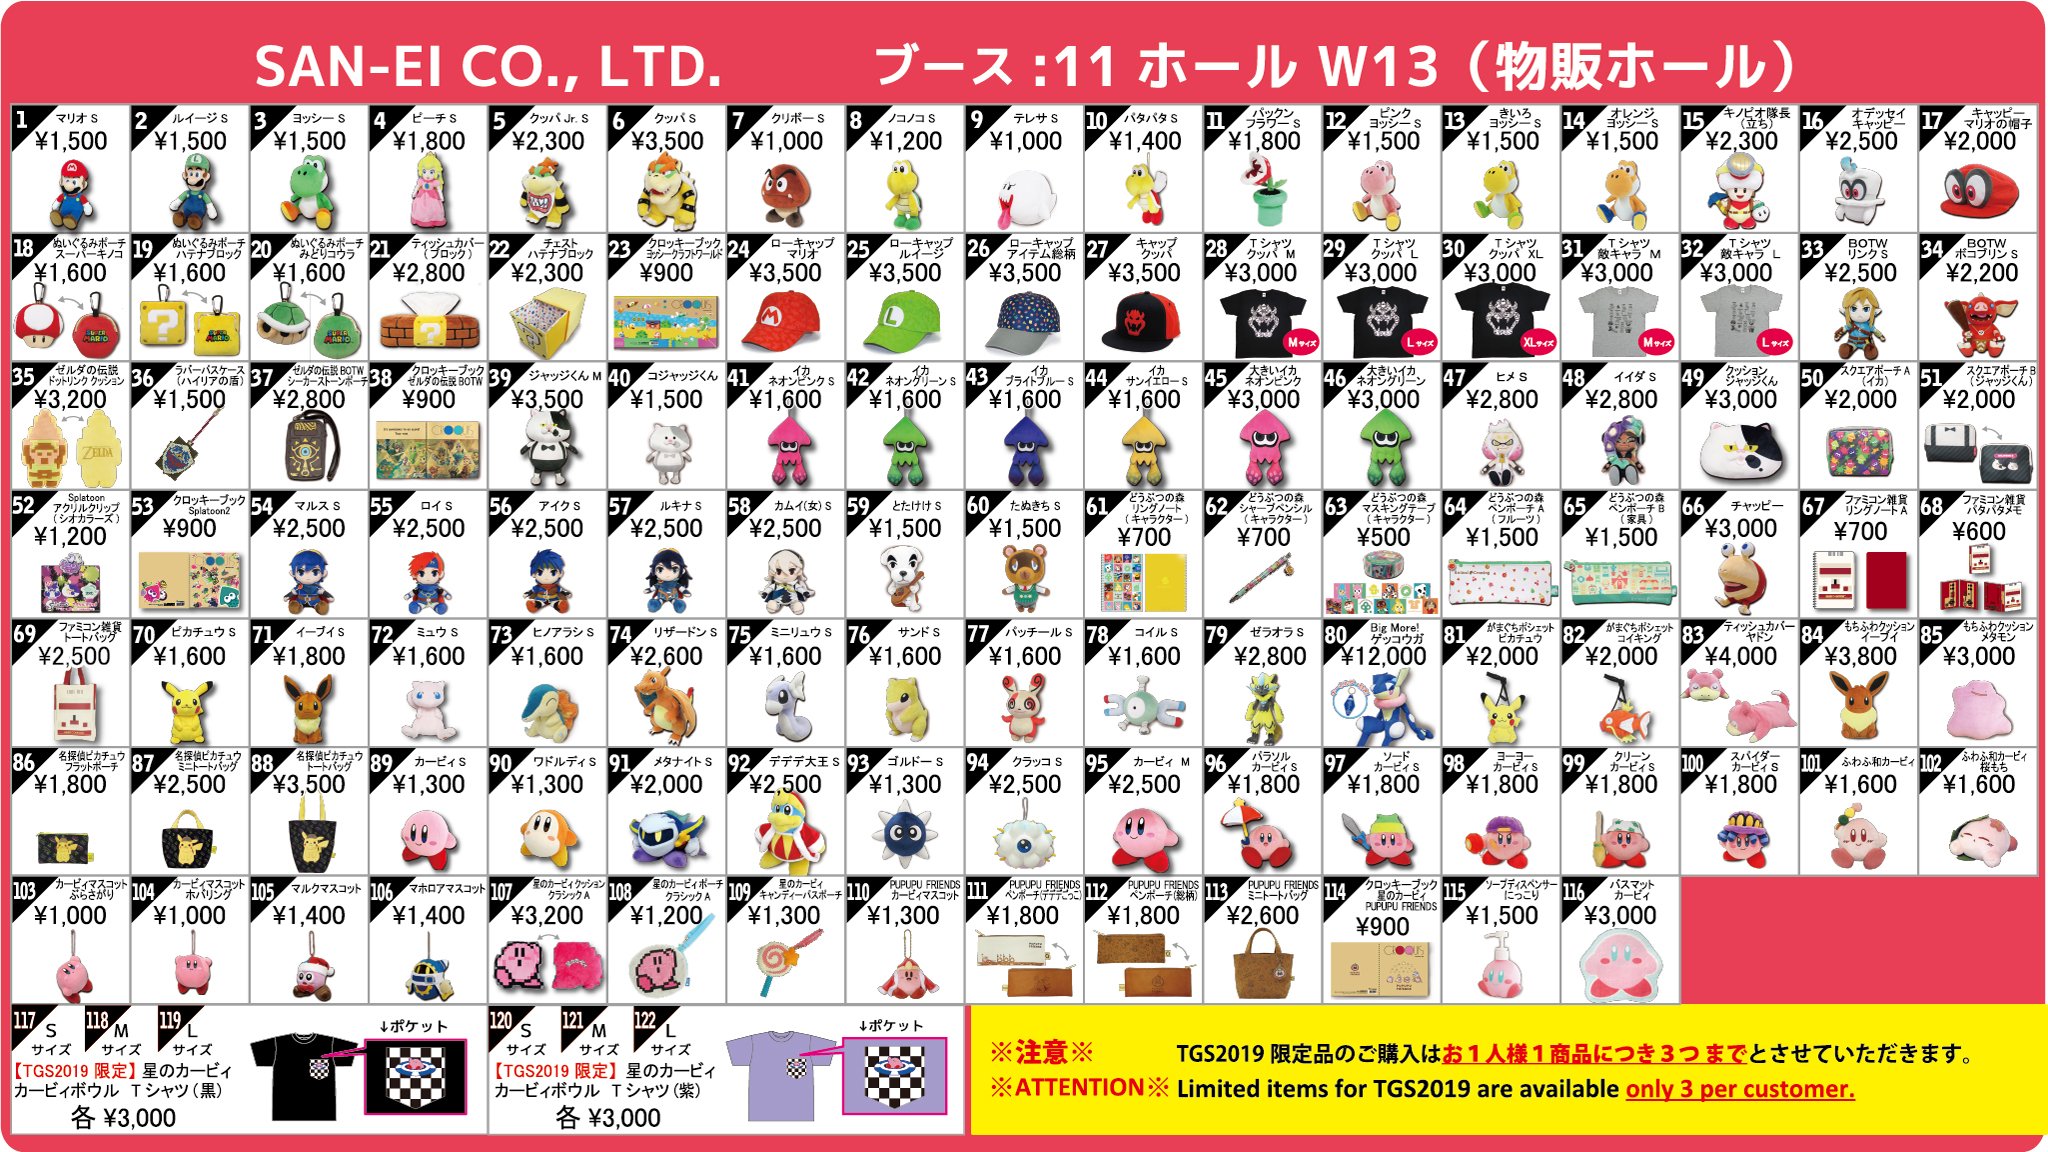 三英貿易が 東京ゲームショウ19 で販売する商品のラインナップを公開